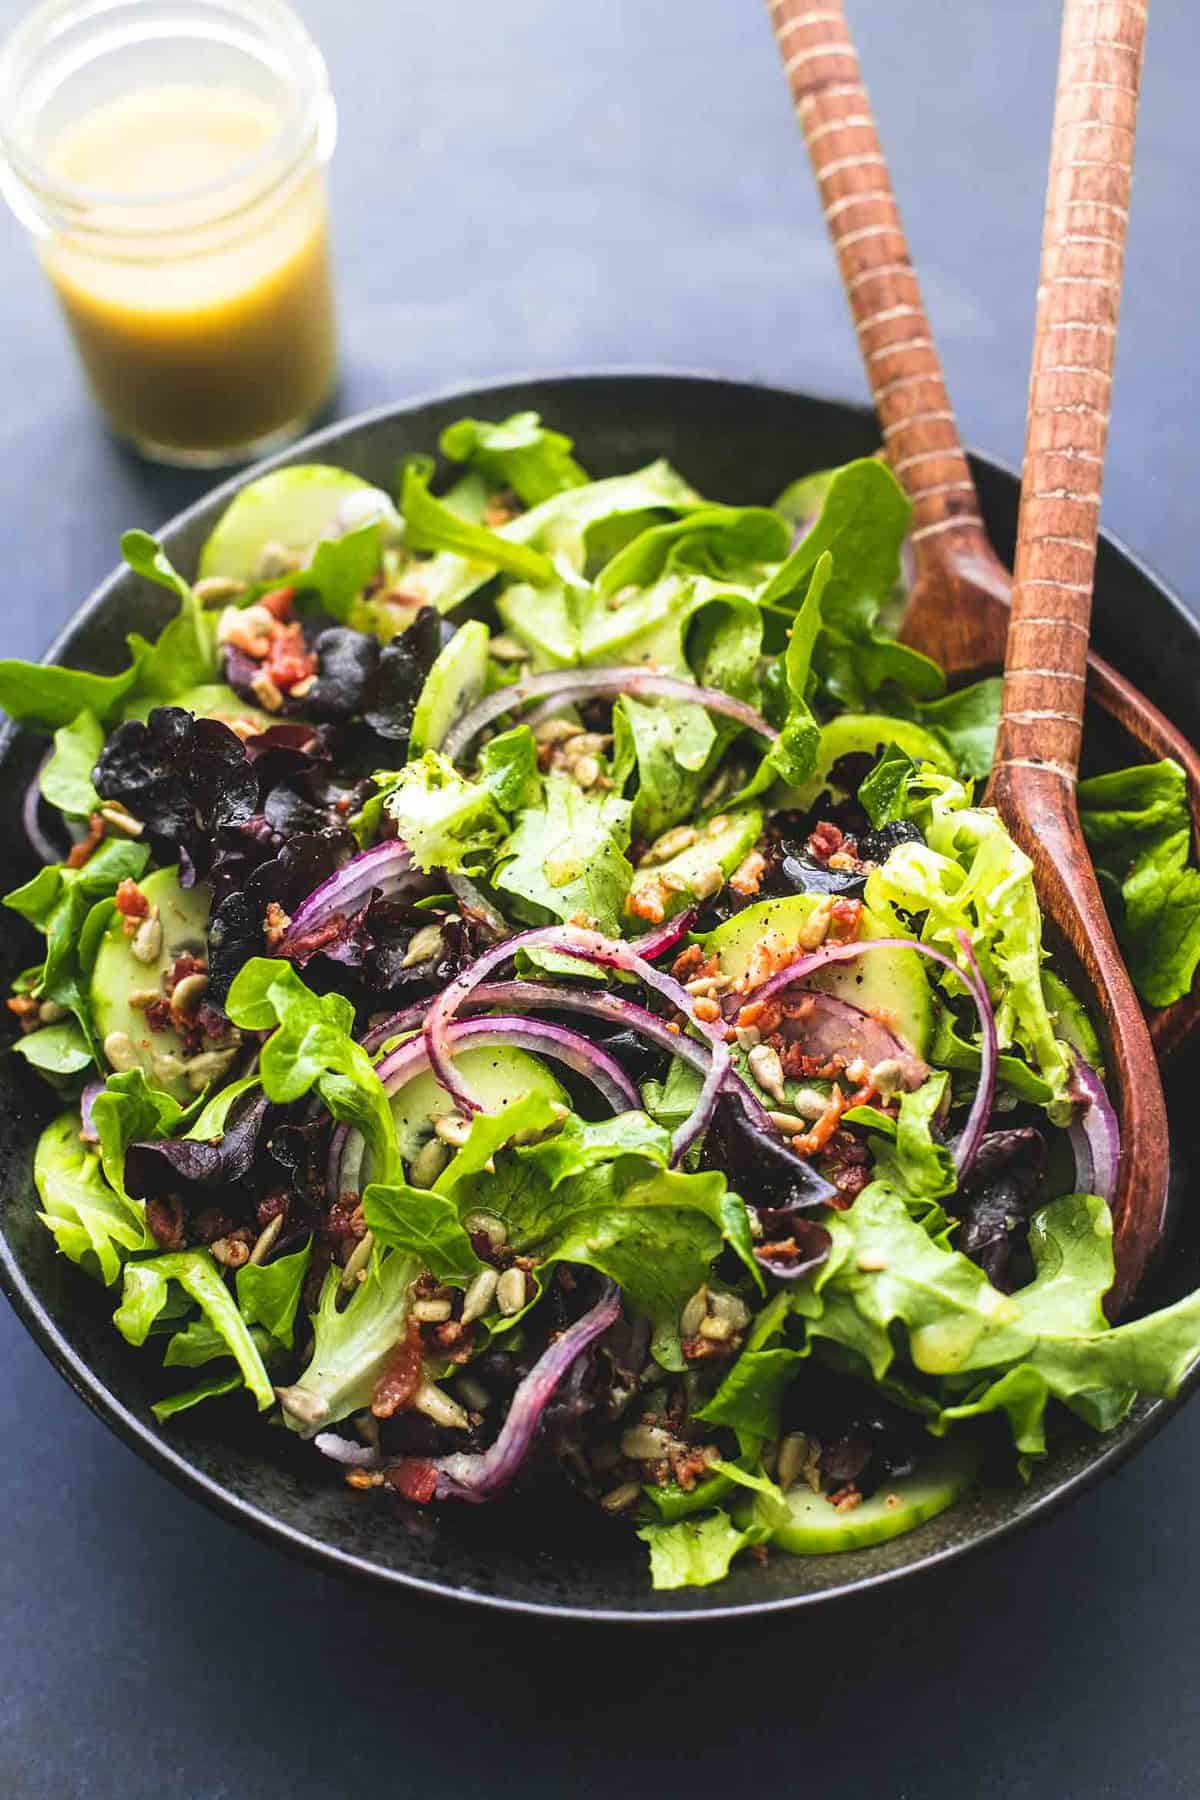 https://www.lecremedelacrumb.com/wp-content/uploads/2019/01/best-simple-green-salad-3.jpg